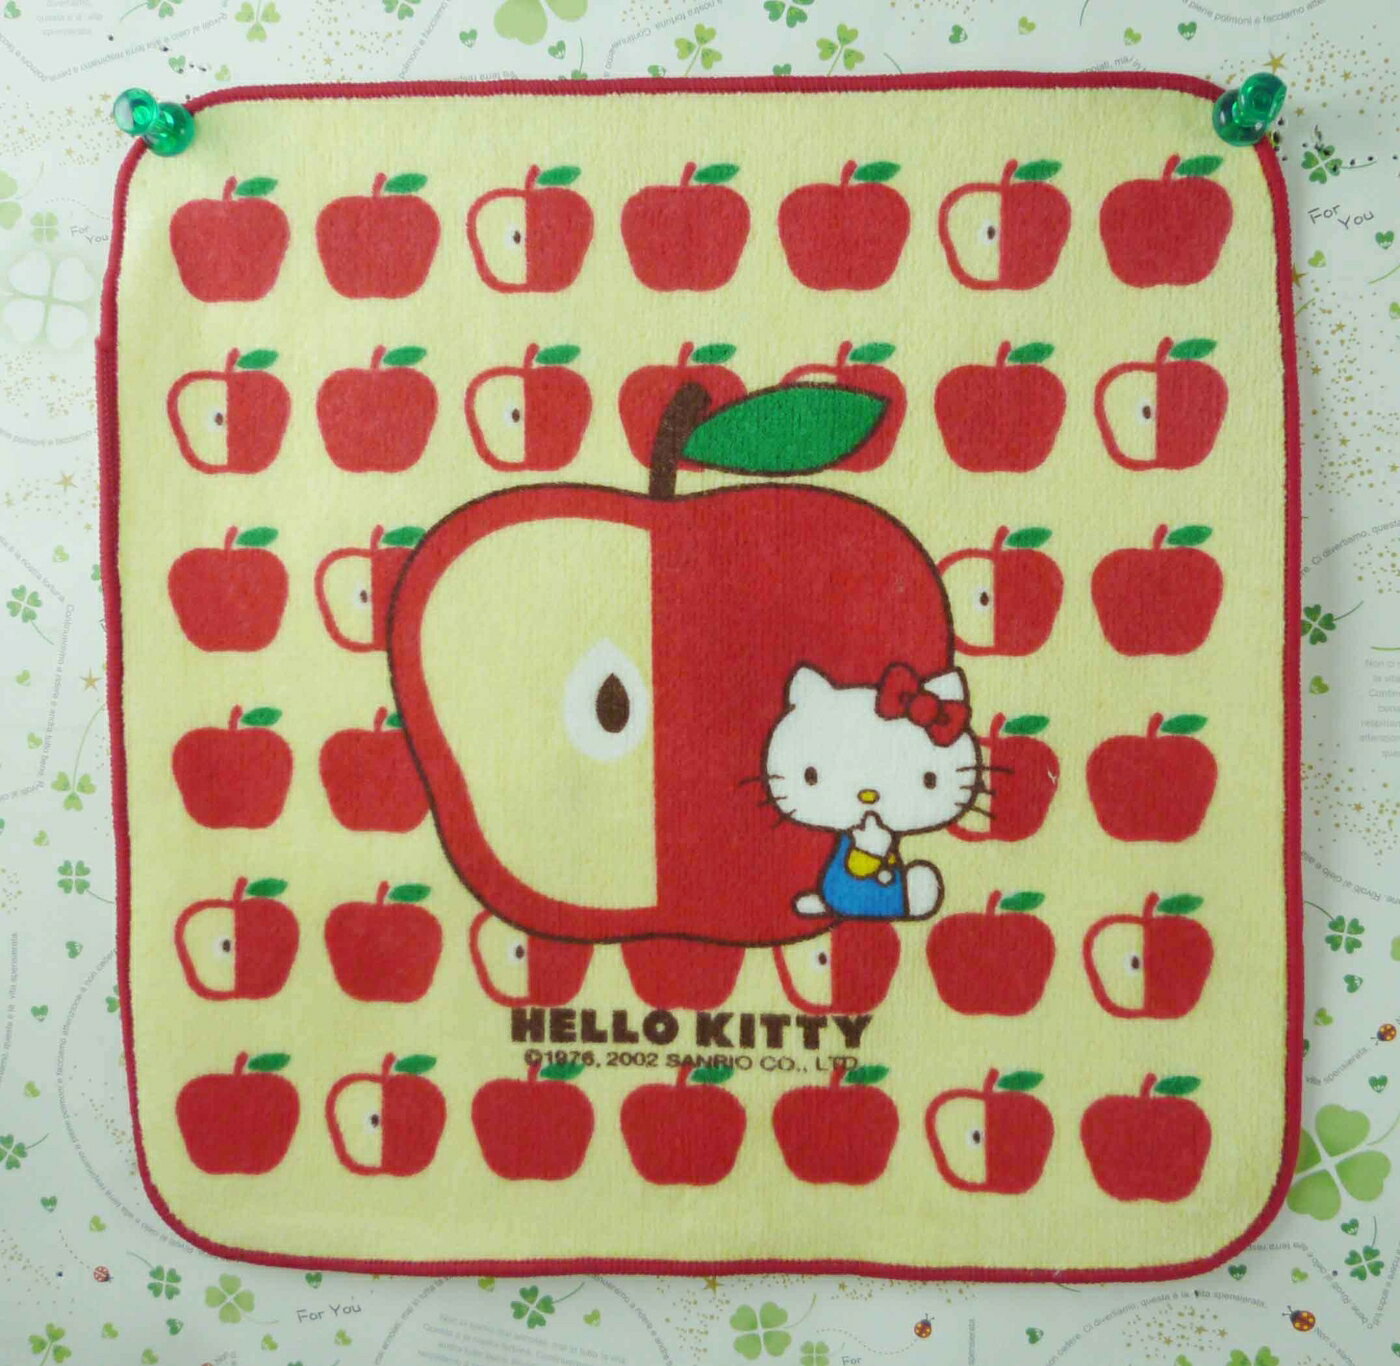 【震撼精品百貨】Hello Kitty 凱蒂貓 方巾/毛巾-米黃色底-蘋果造型 震撼日式精品百貨